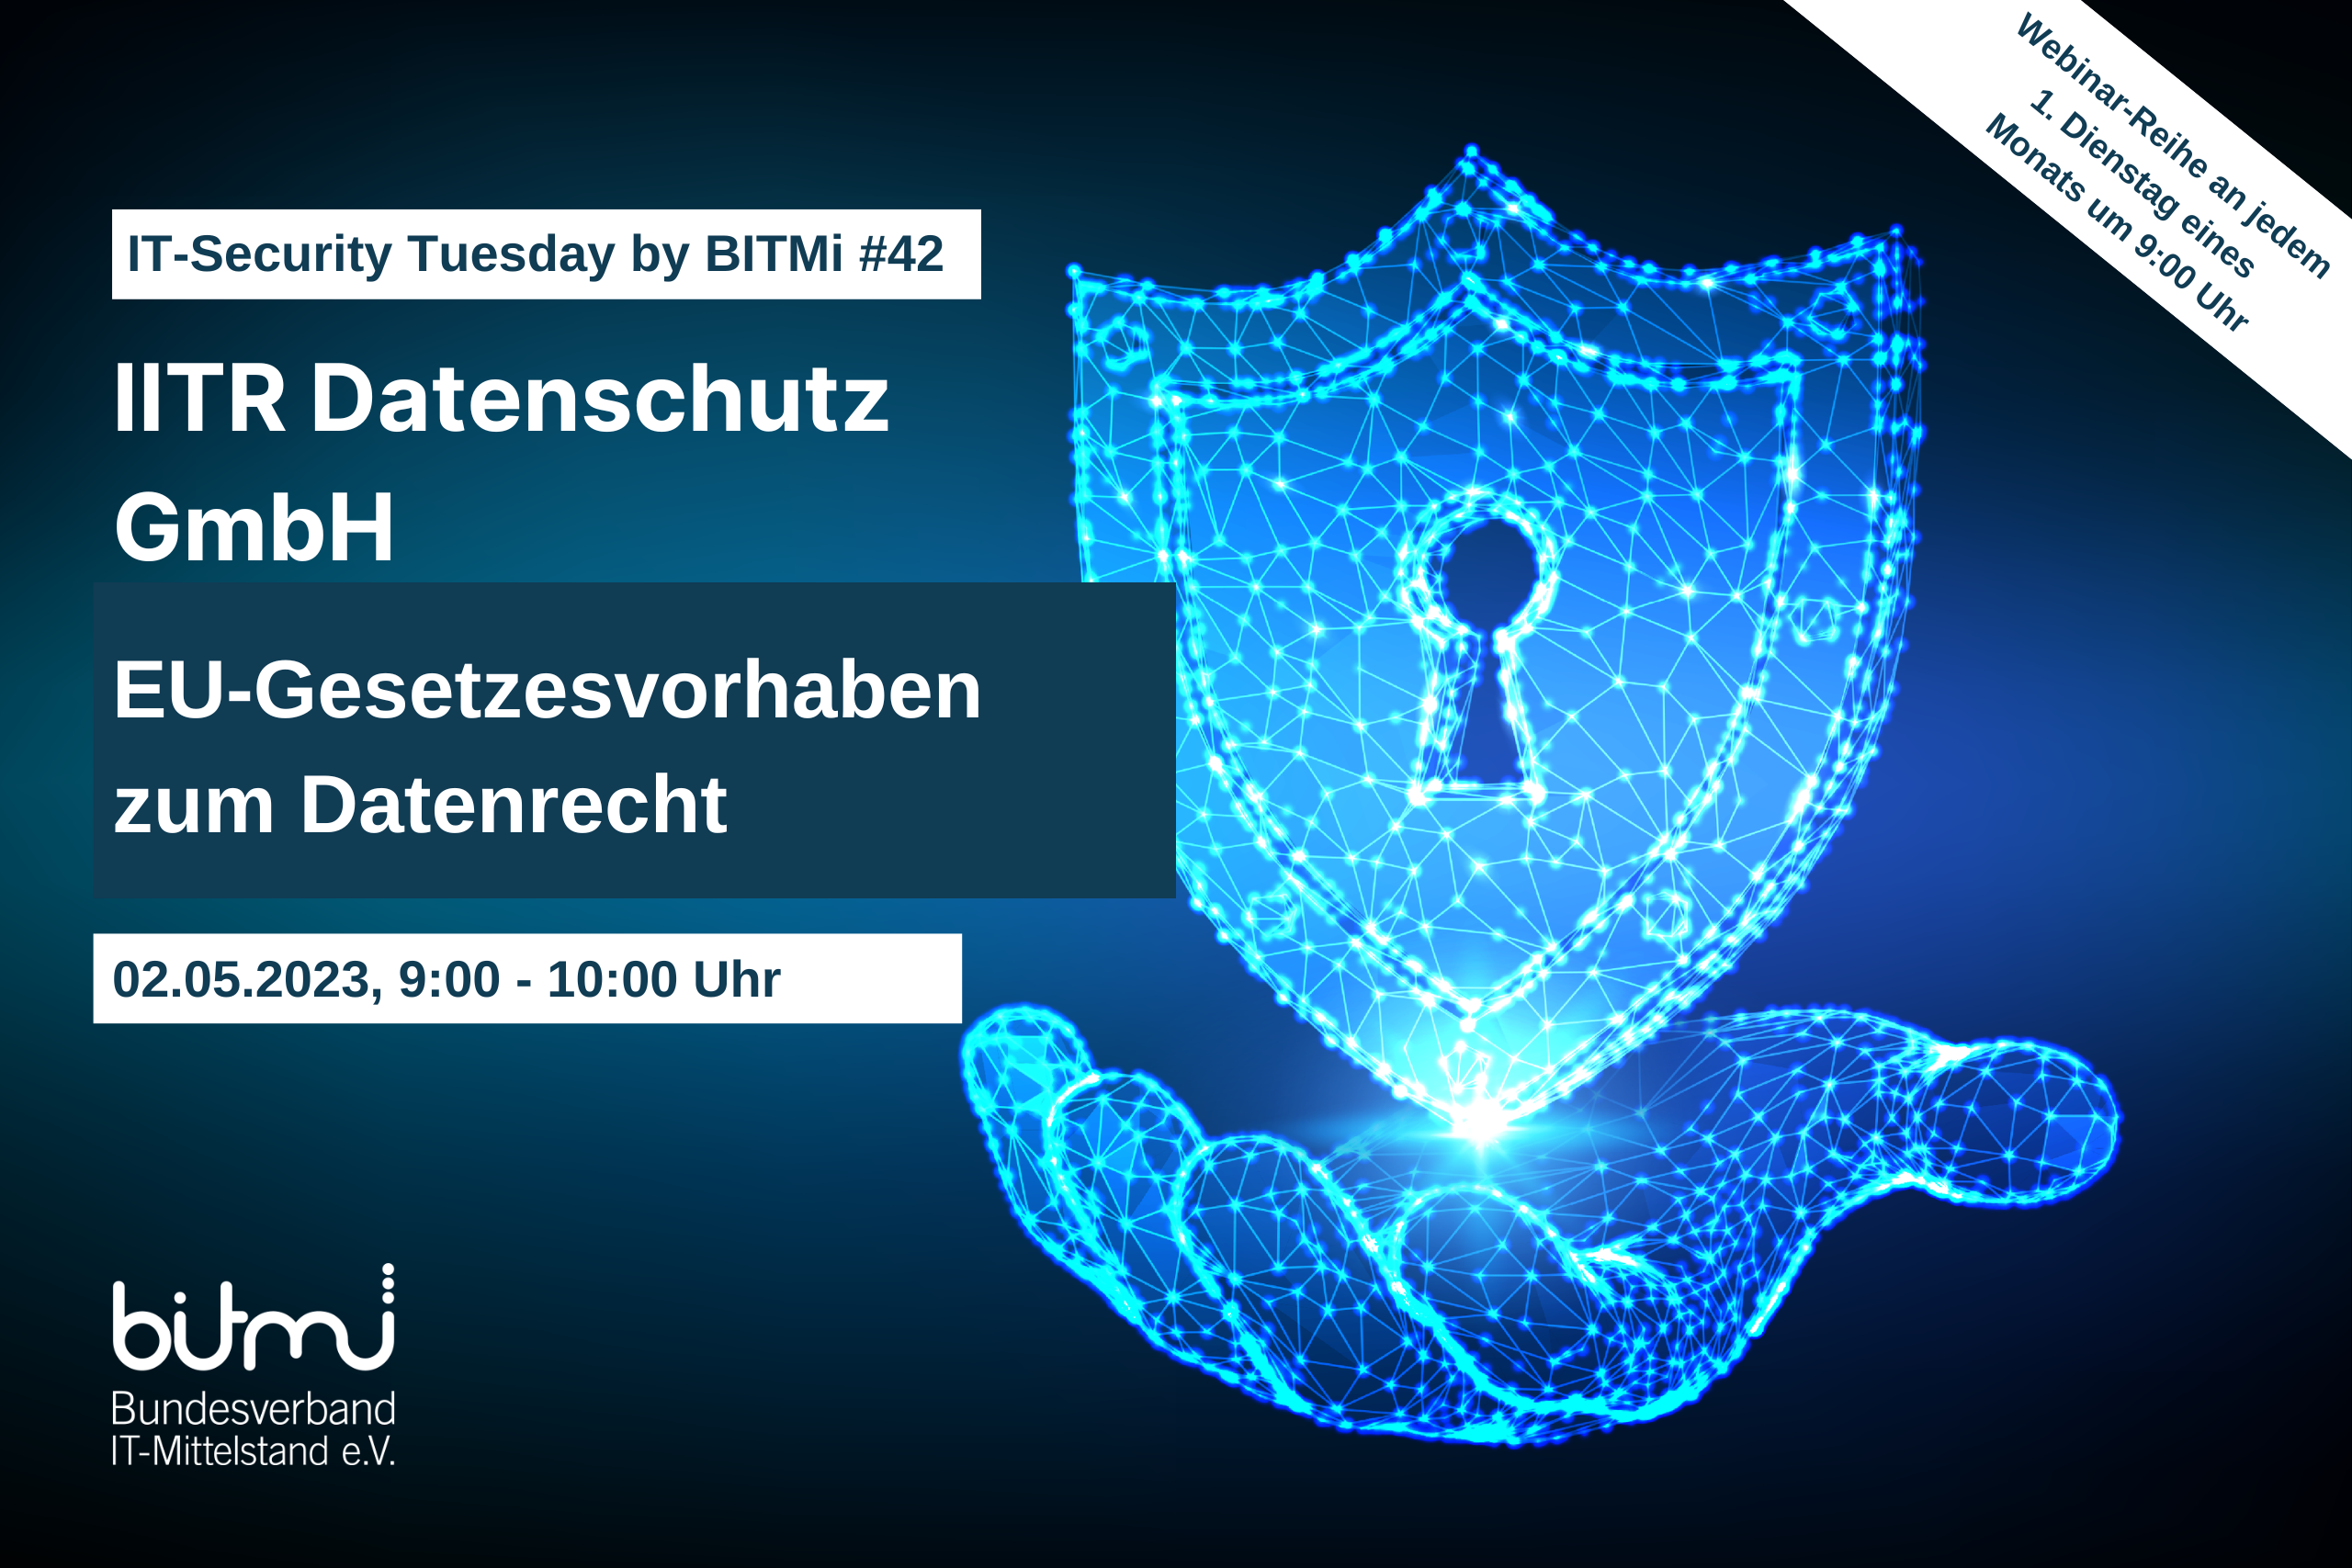 IT-Security Tuesday mit BITMi Mitglied IITR Datenschutz GmbH: EU-Gesetzesvorhaben zum Datenrecht